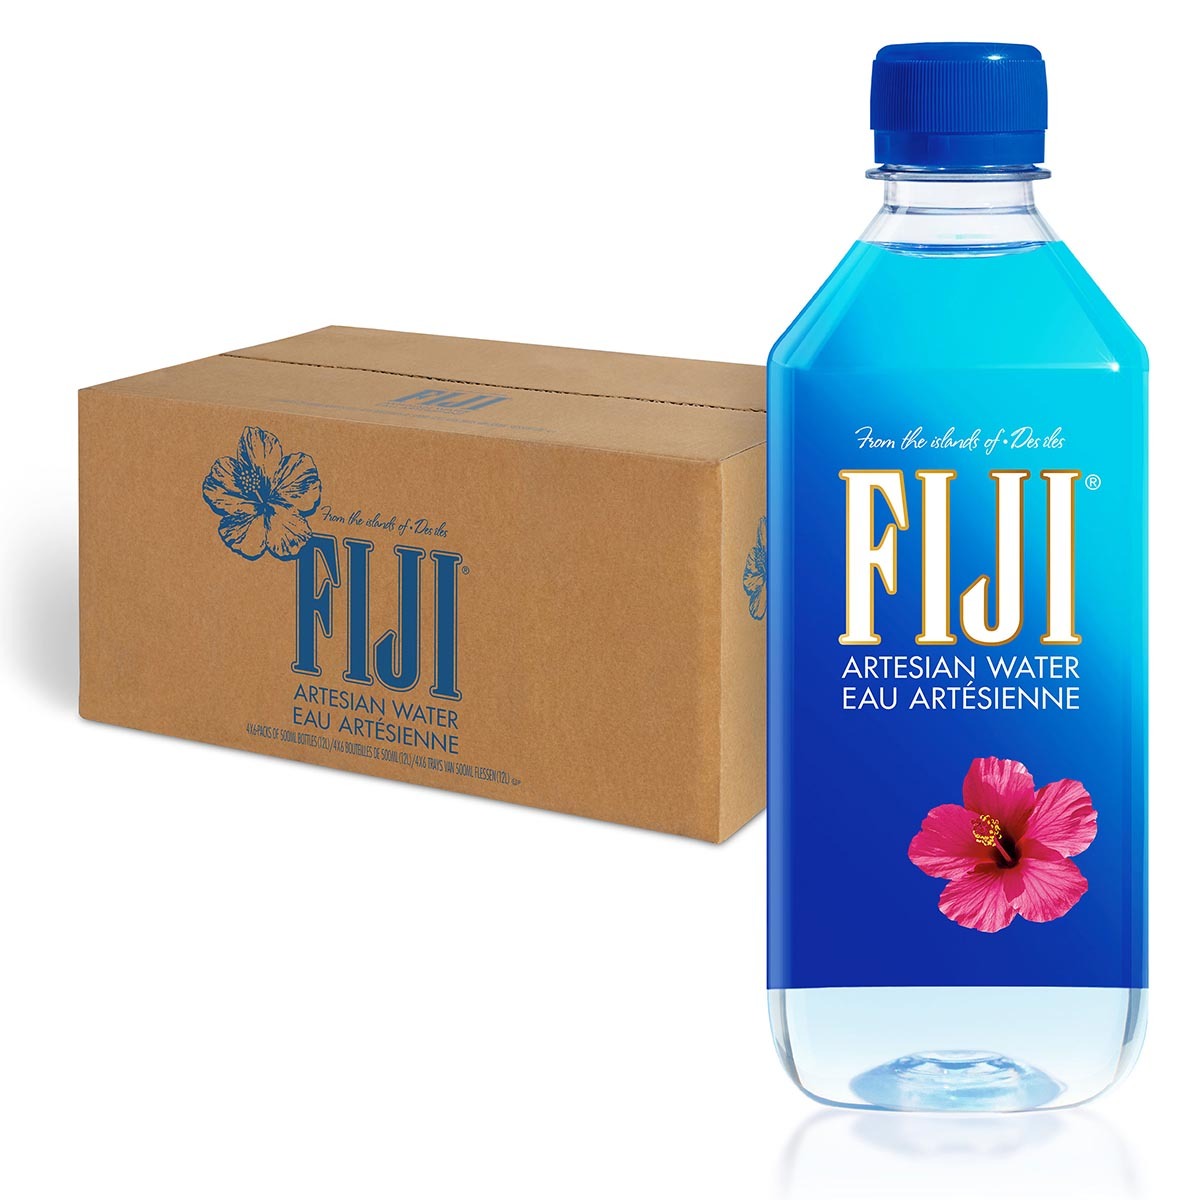 FIJI Natural Mineral Water 4x(6x500ml)